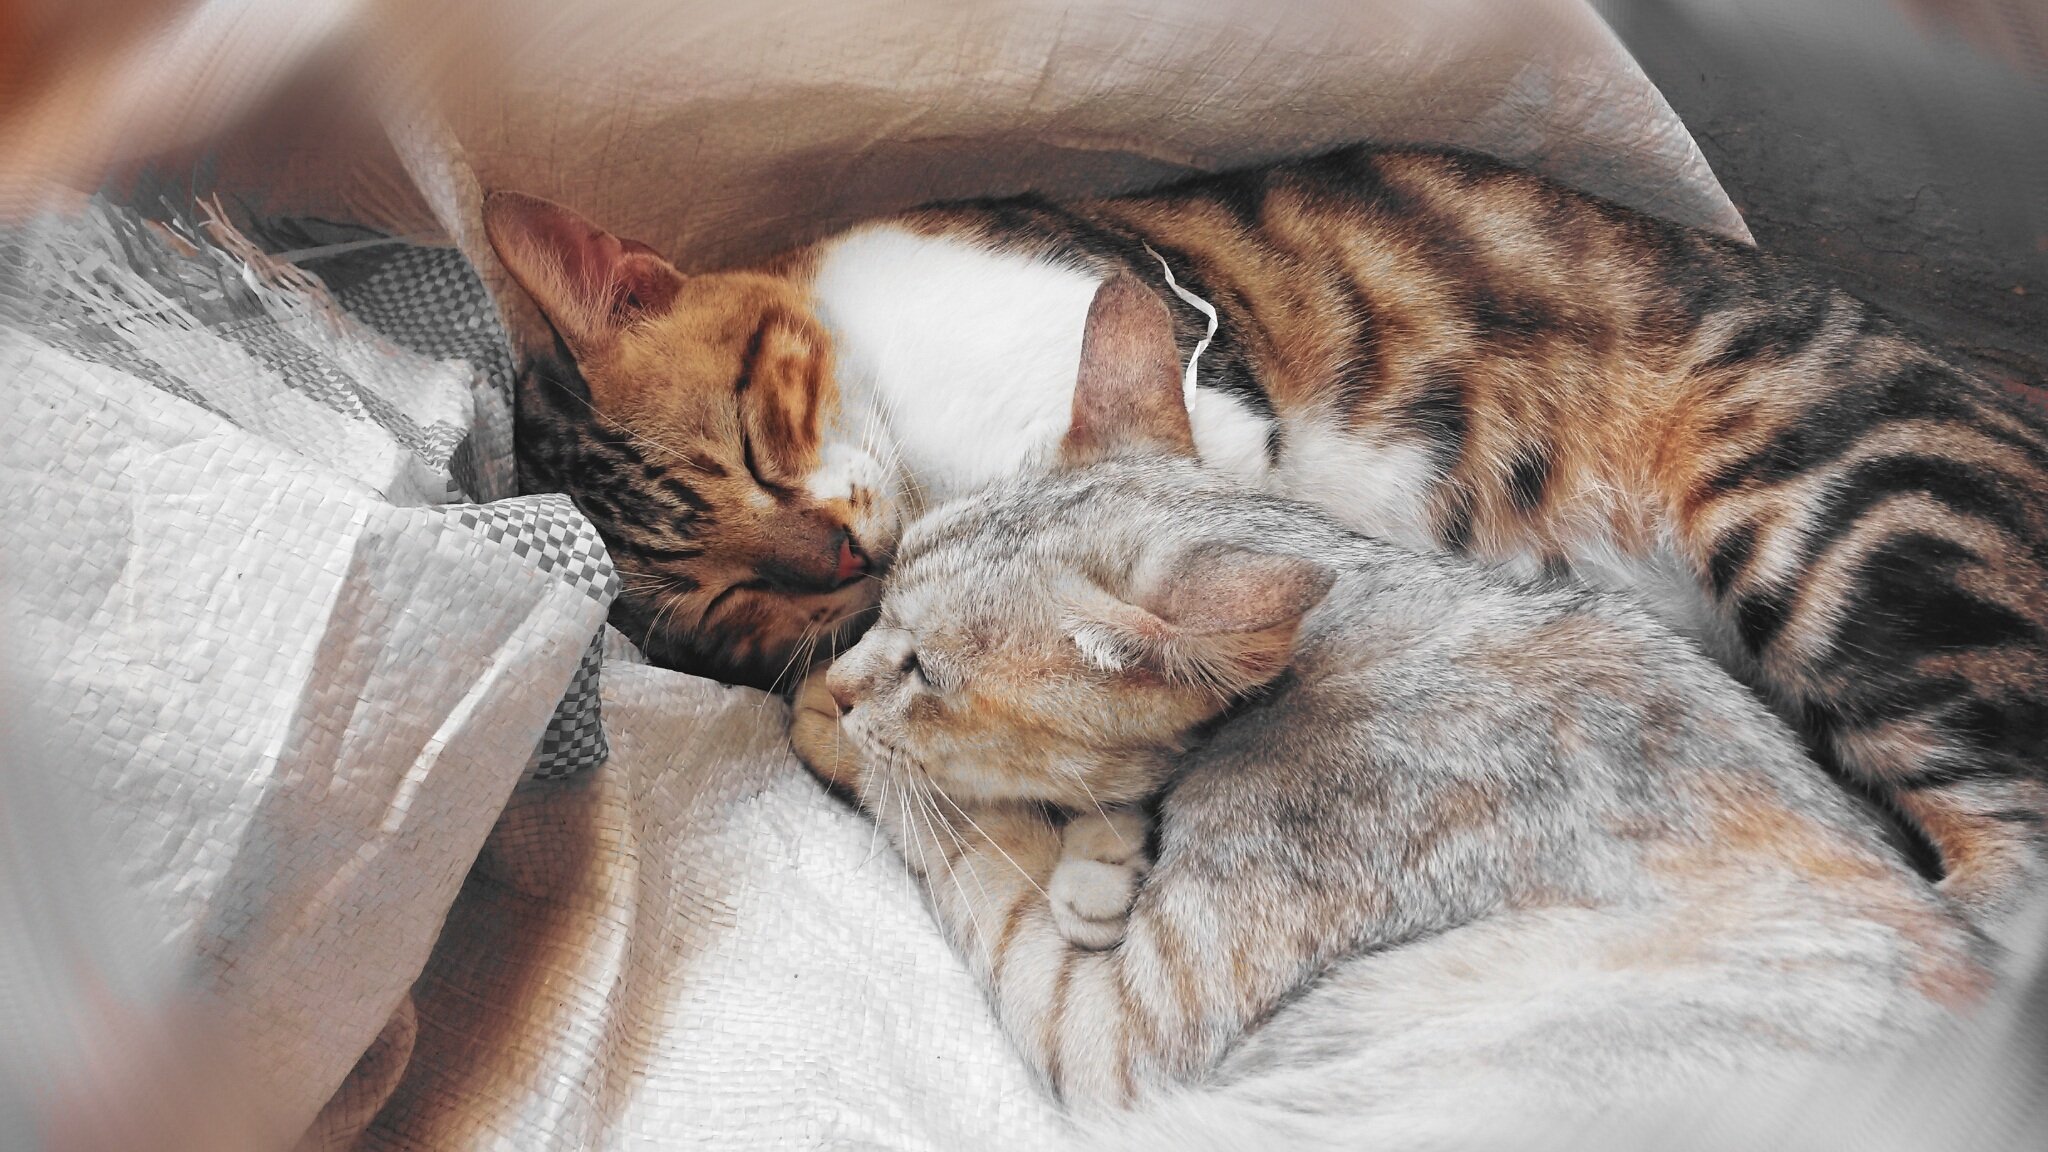 Спим в кровати вместе